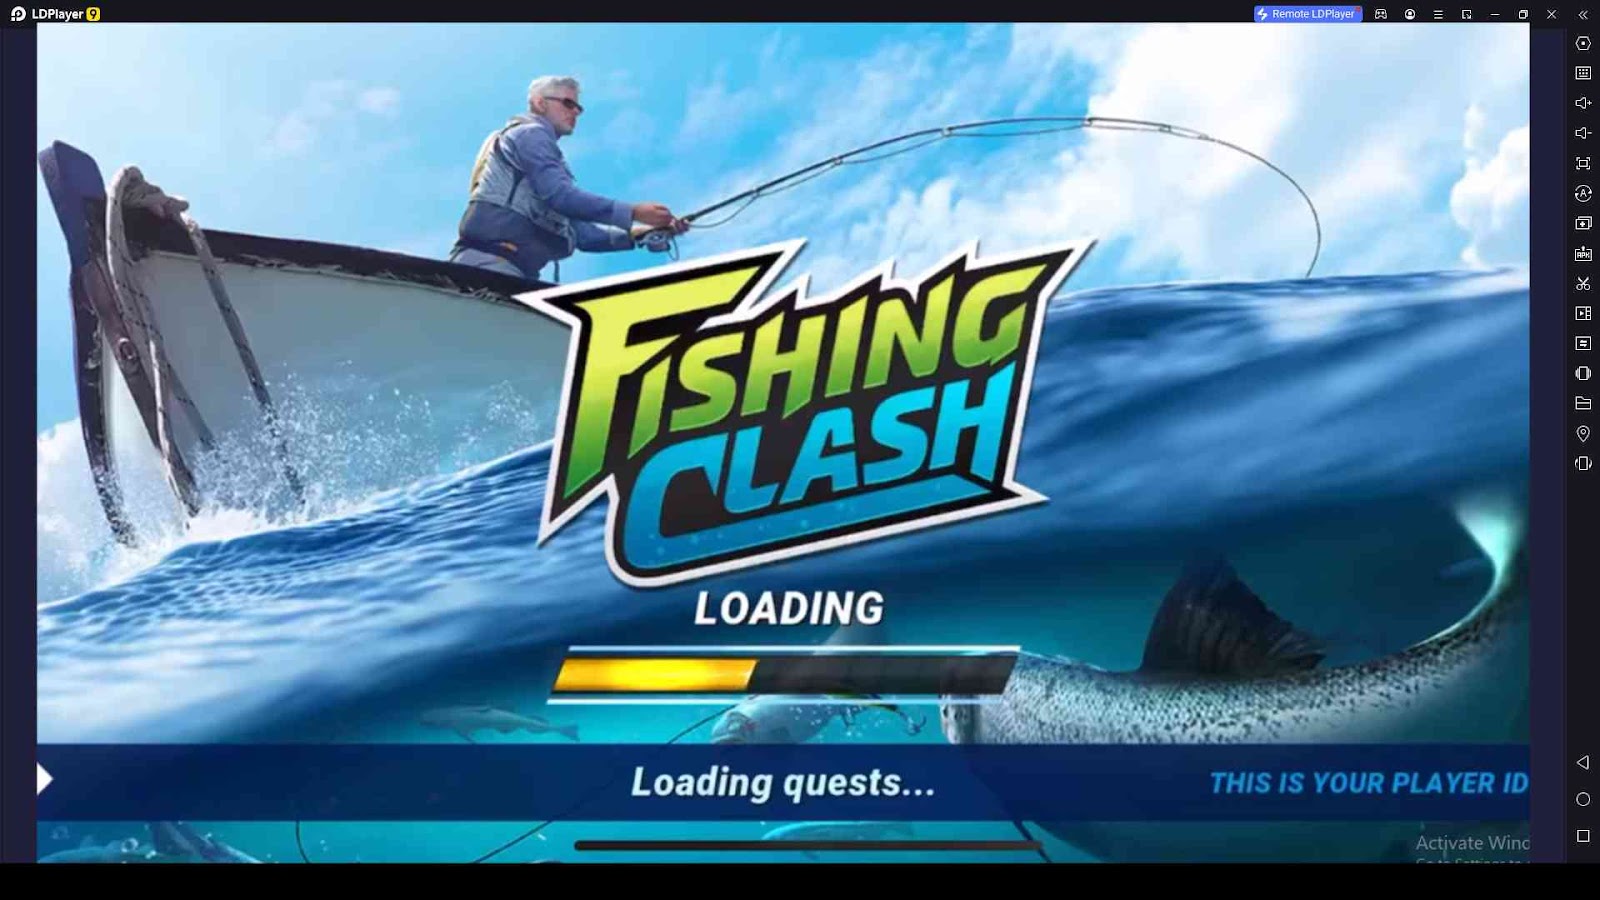 Fishing Clash Codes